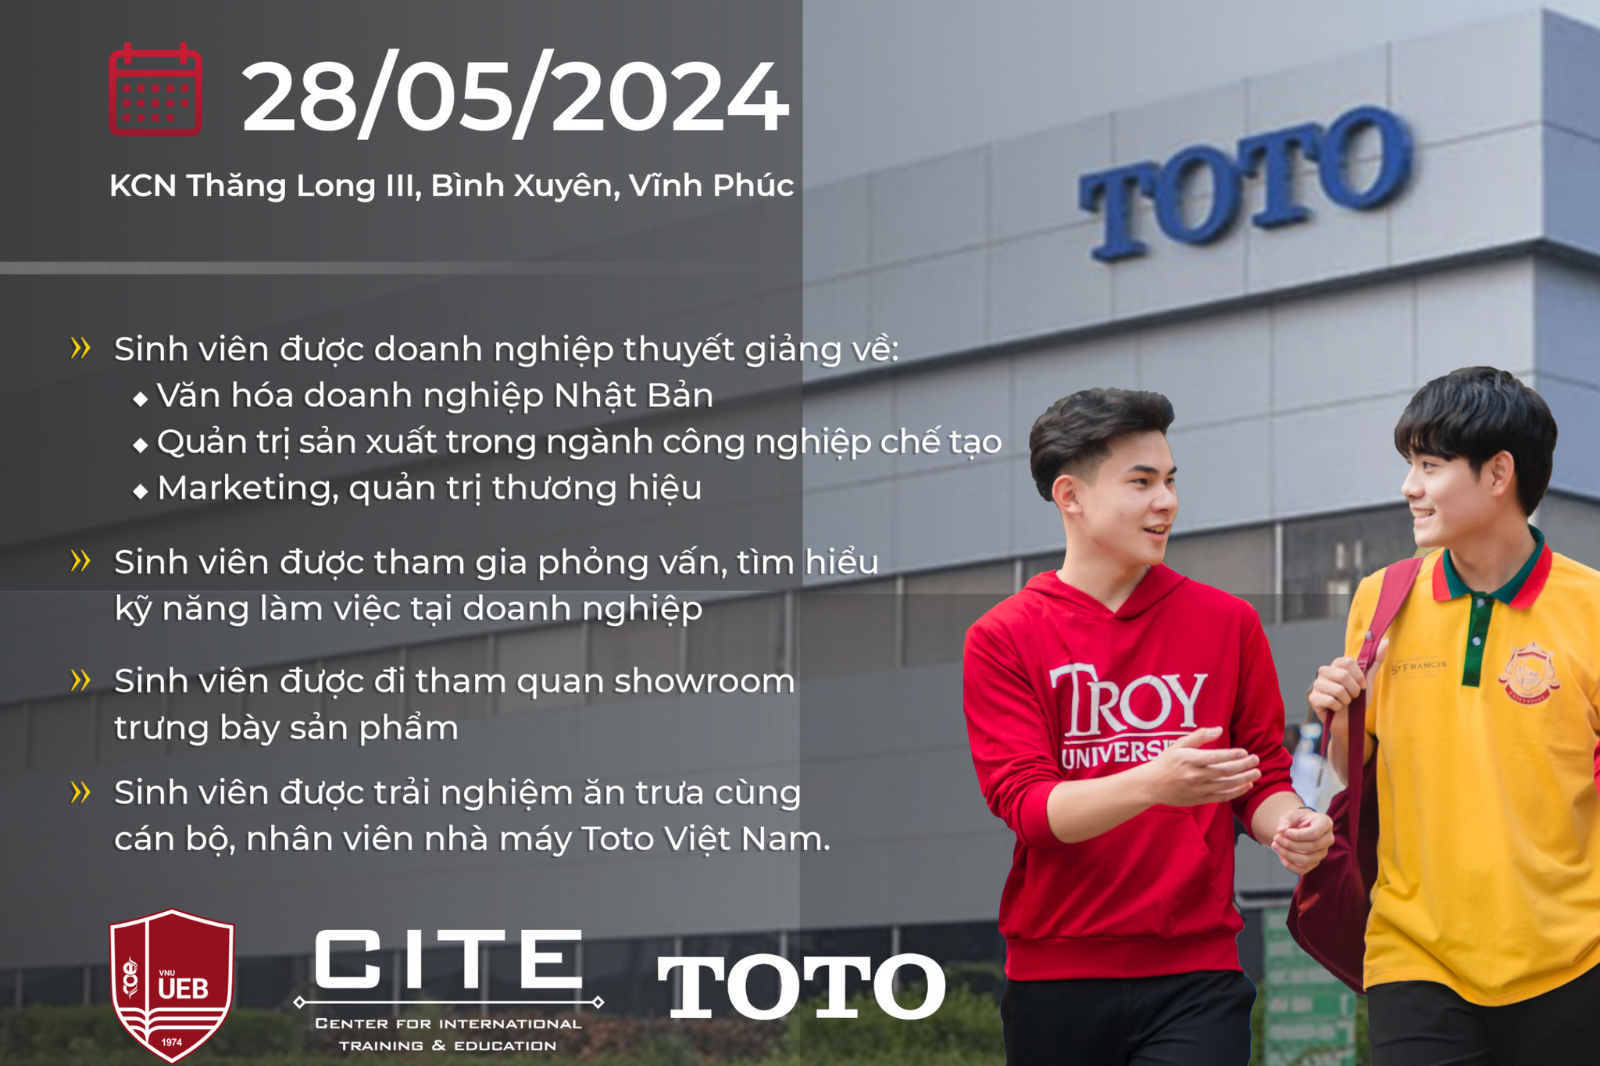 Thông báo chuyến tham quan thực tế doanh nghiệp tại Công ty Nhật Bản hàng đầu thế giới – ToTo Việt Nam dành cho sinh viên UEB - Troy và UEB - USF